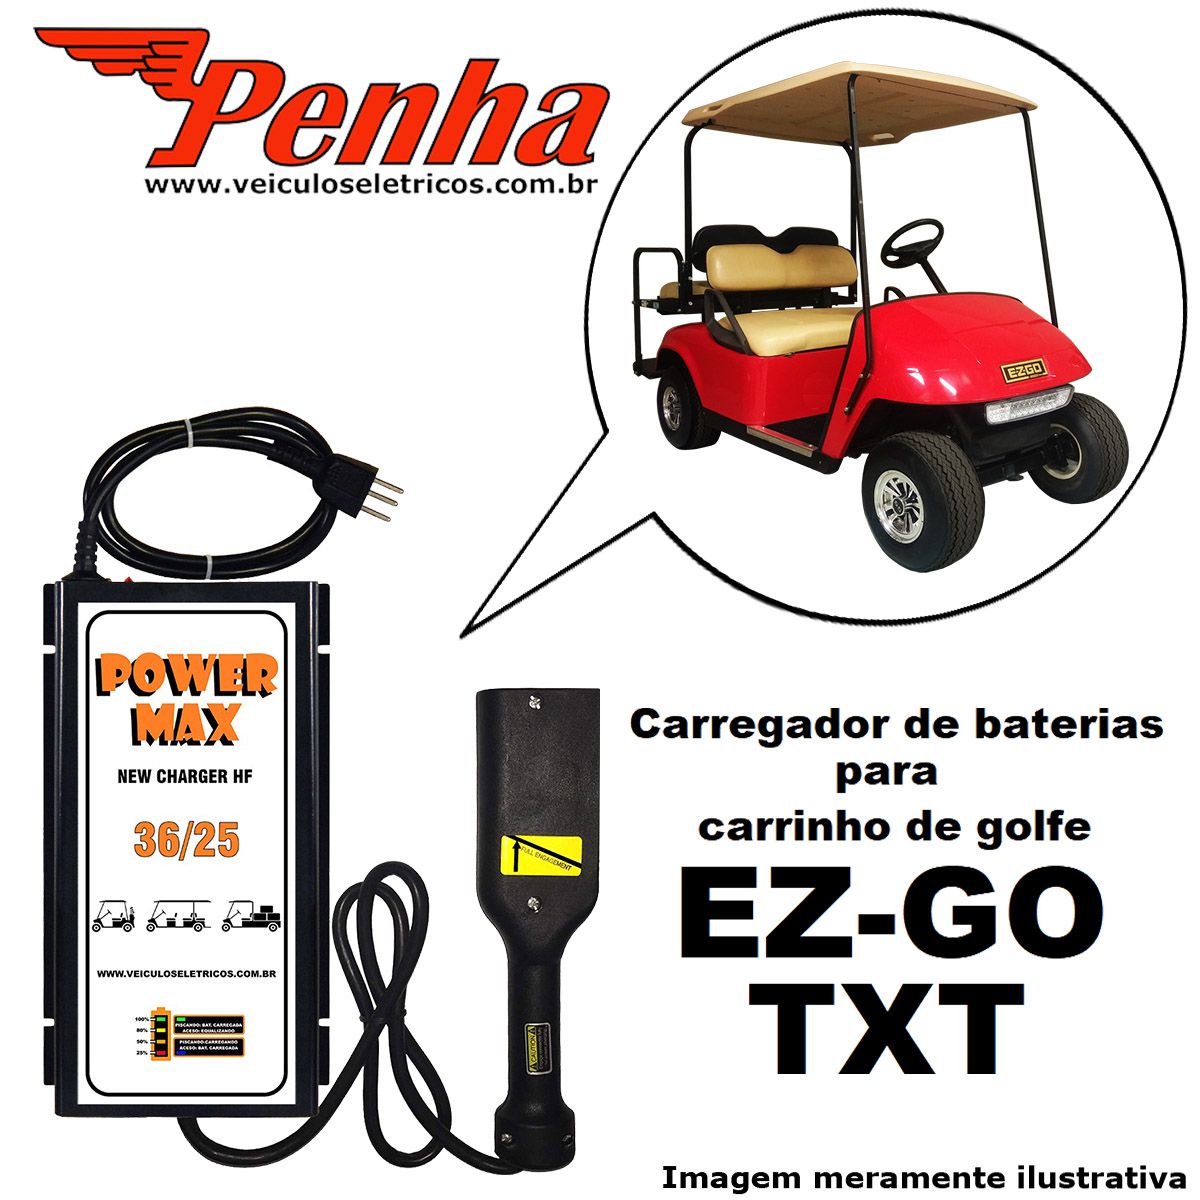 Carregador de Baterias para Carrinho de Golfe EZGO TXT